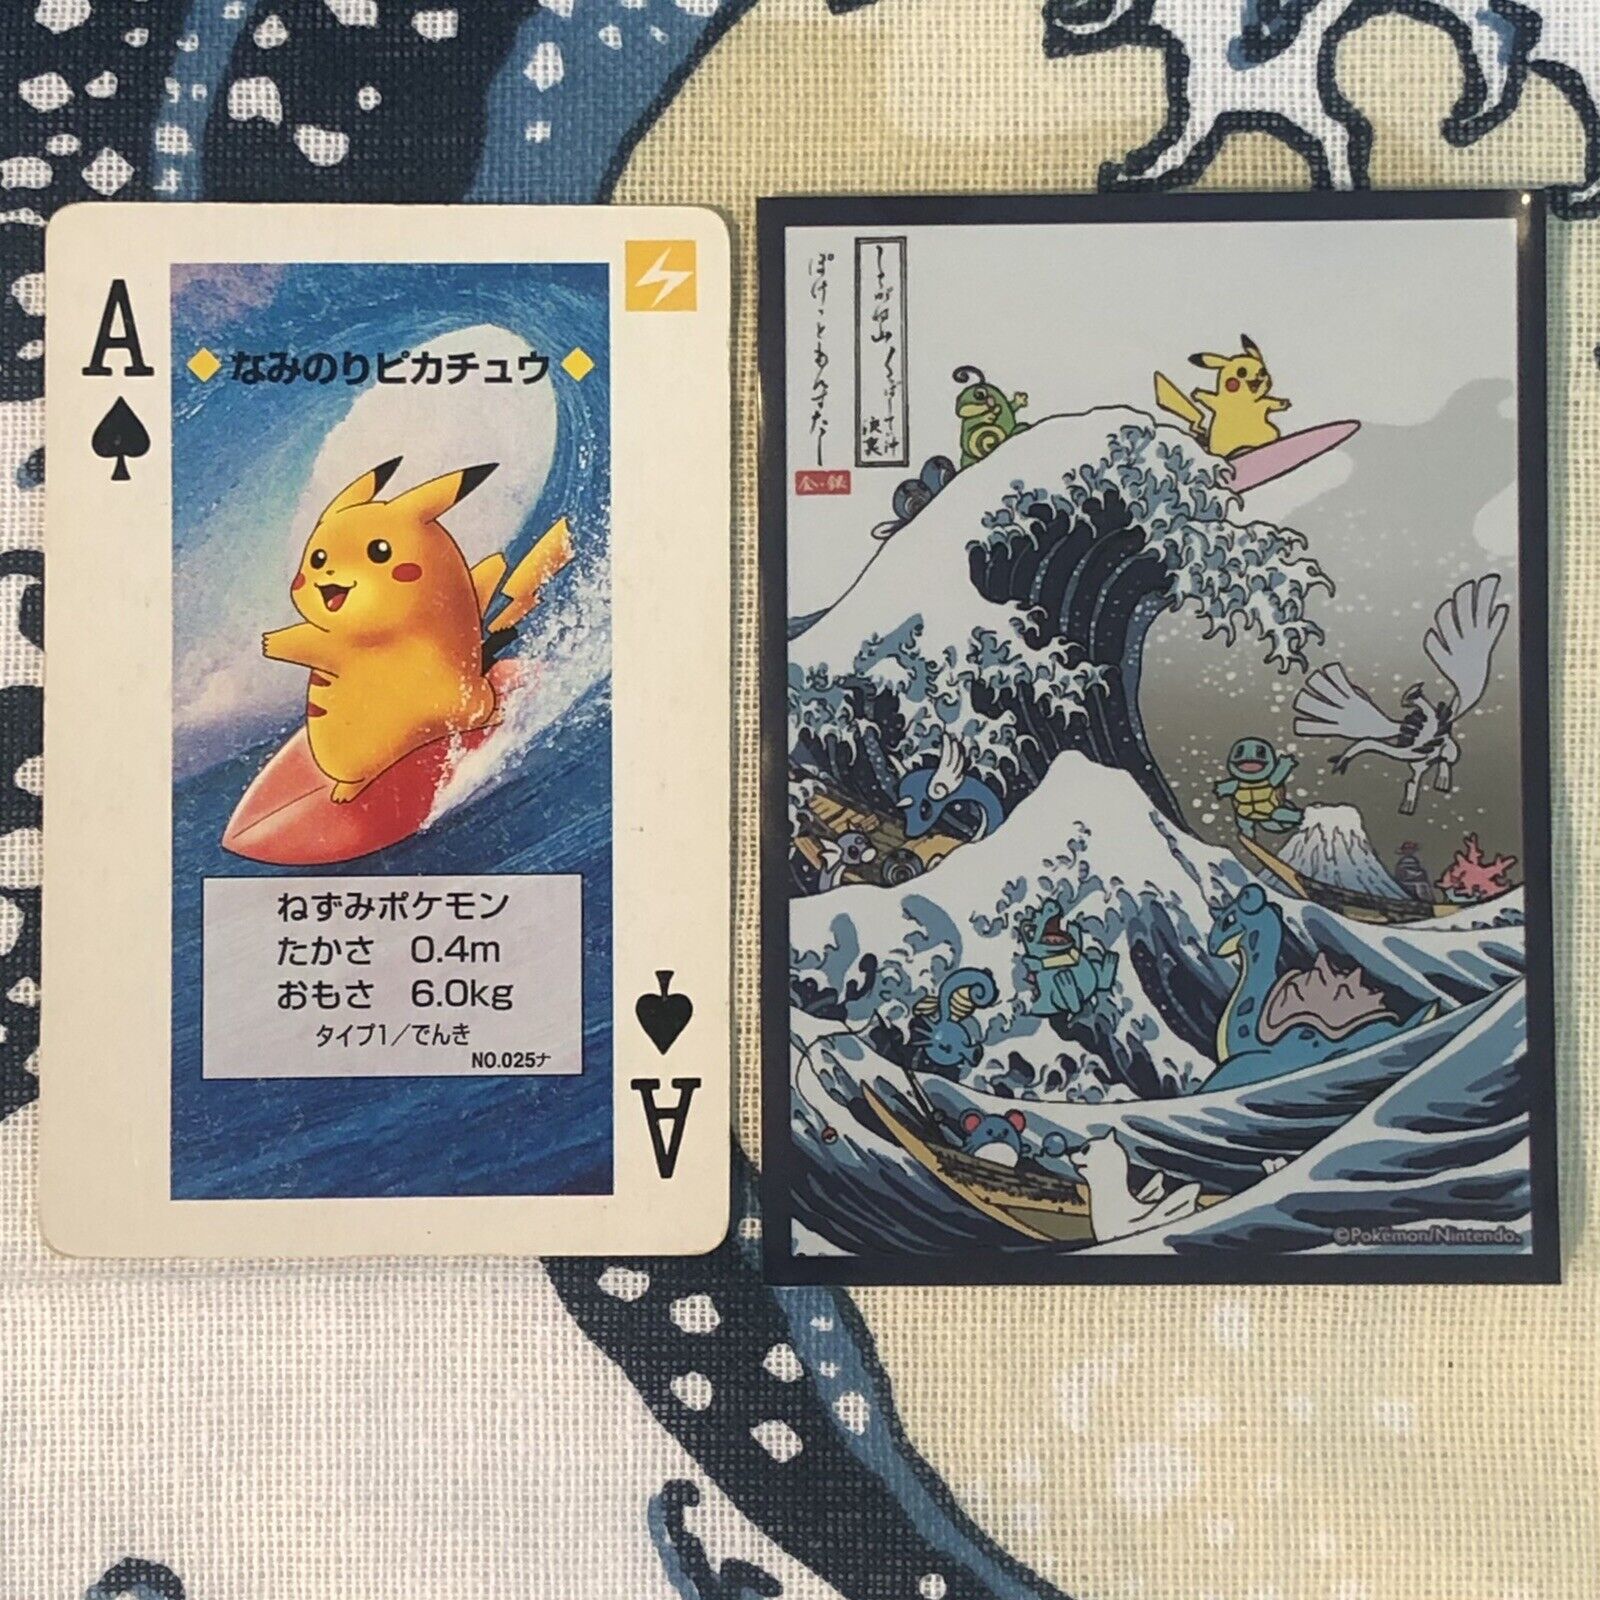 MEGA RARE SURFING PIKACHU ACE OF SPADES 1996 LP + Pokémon Center Naminori Sleeve